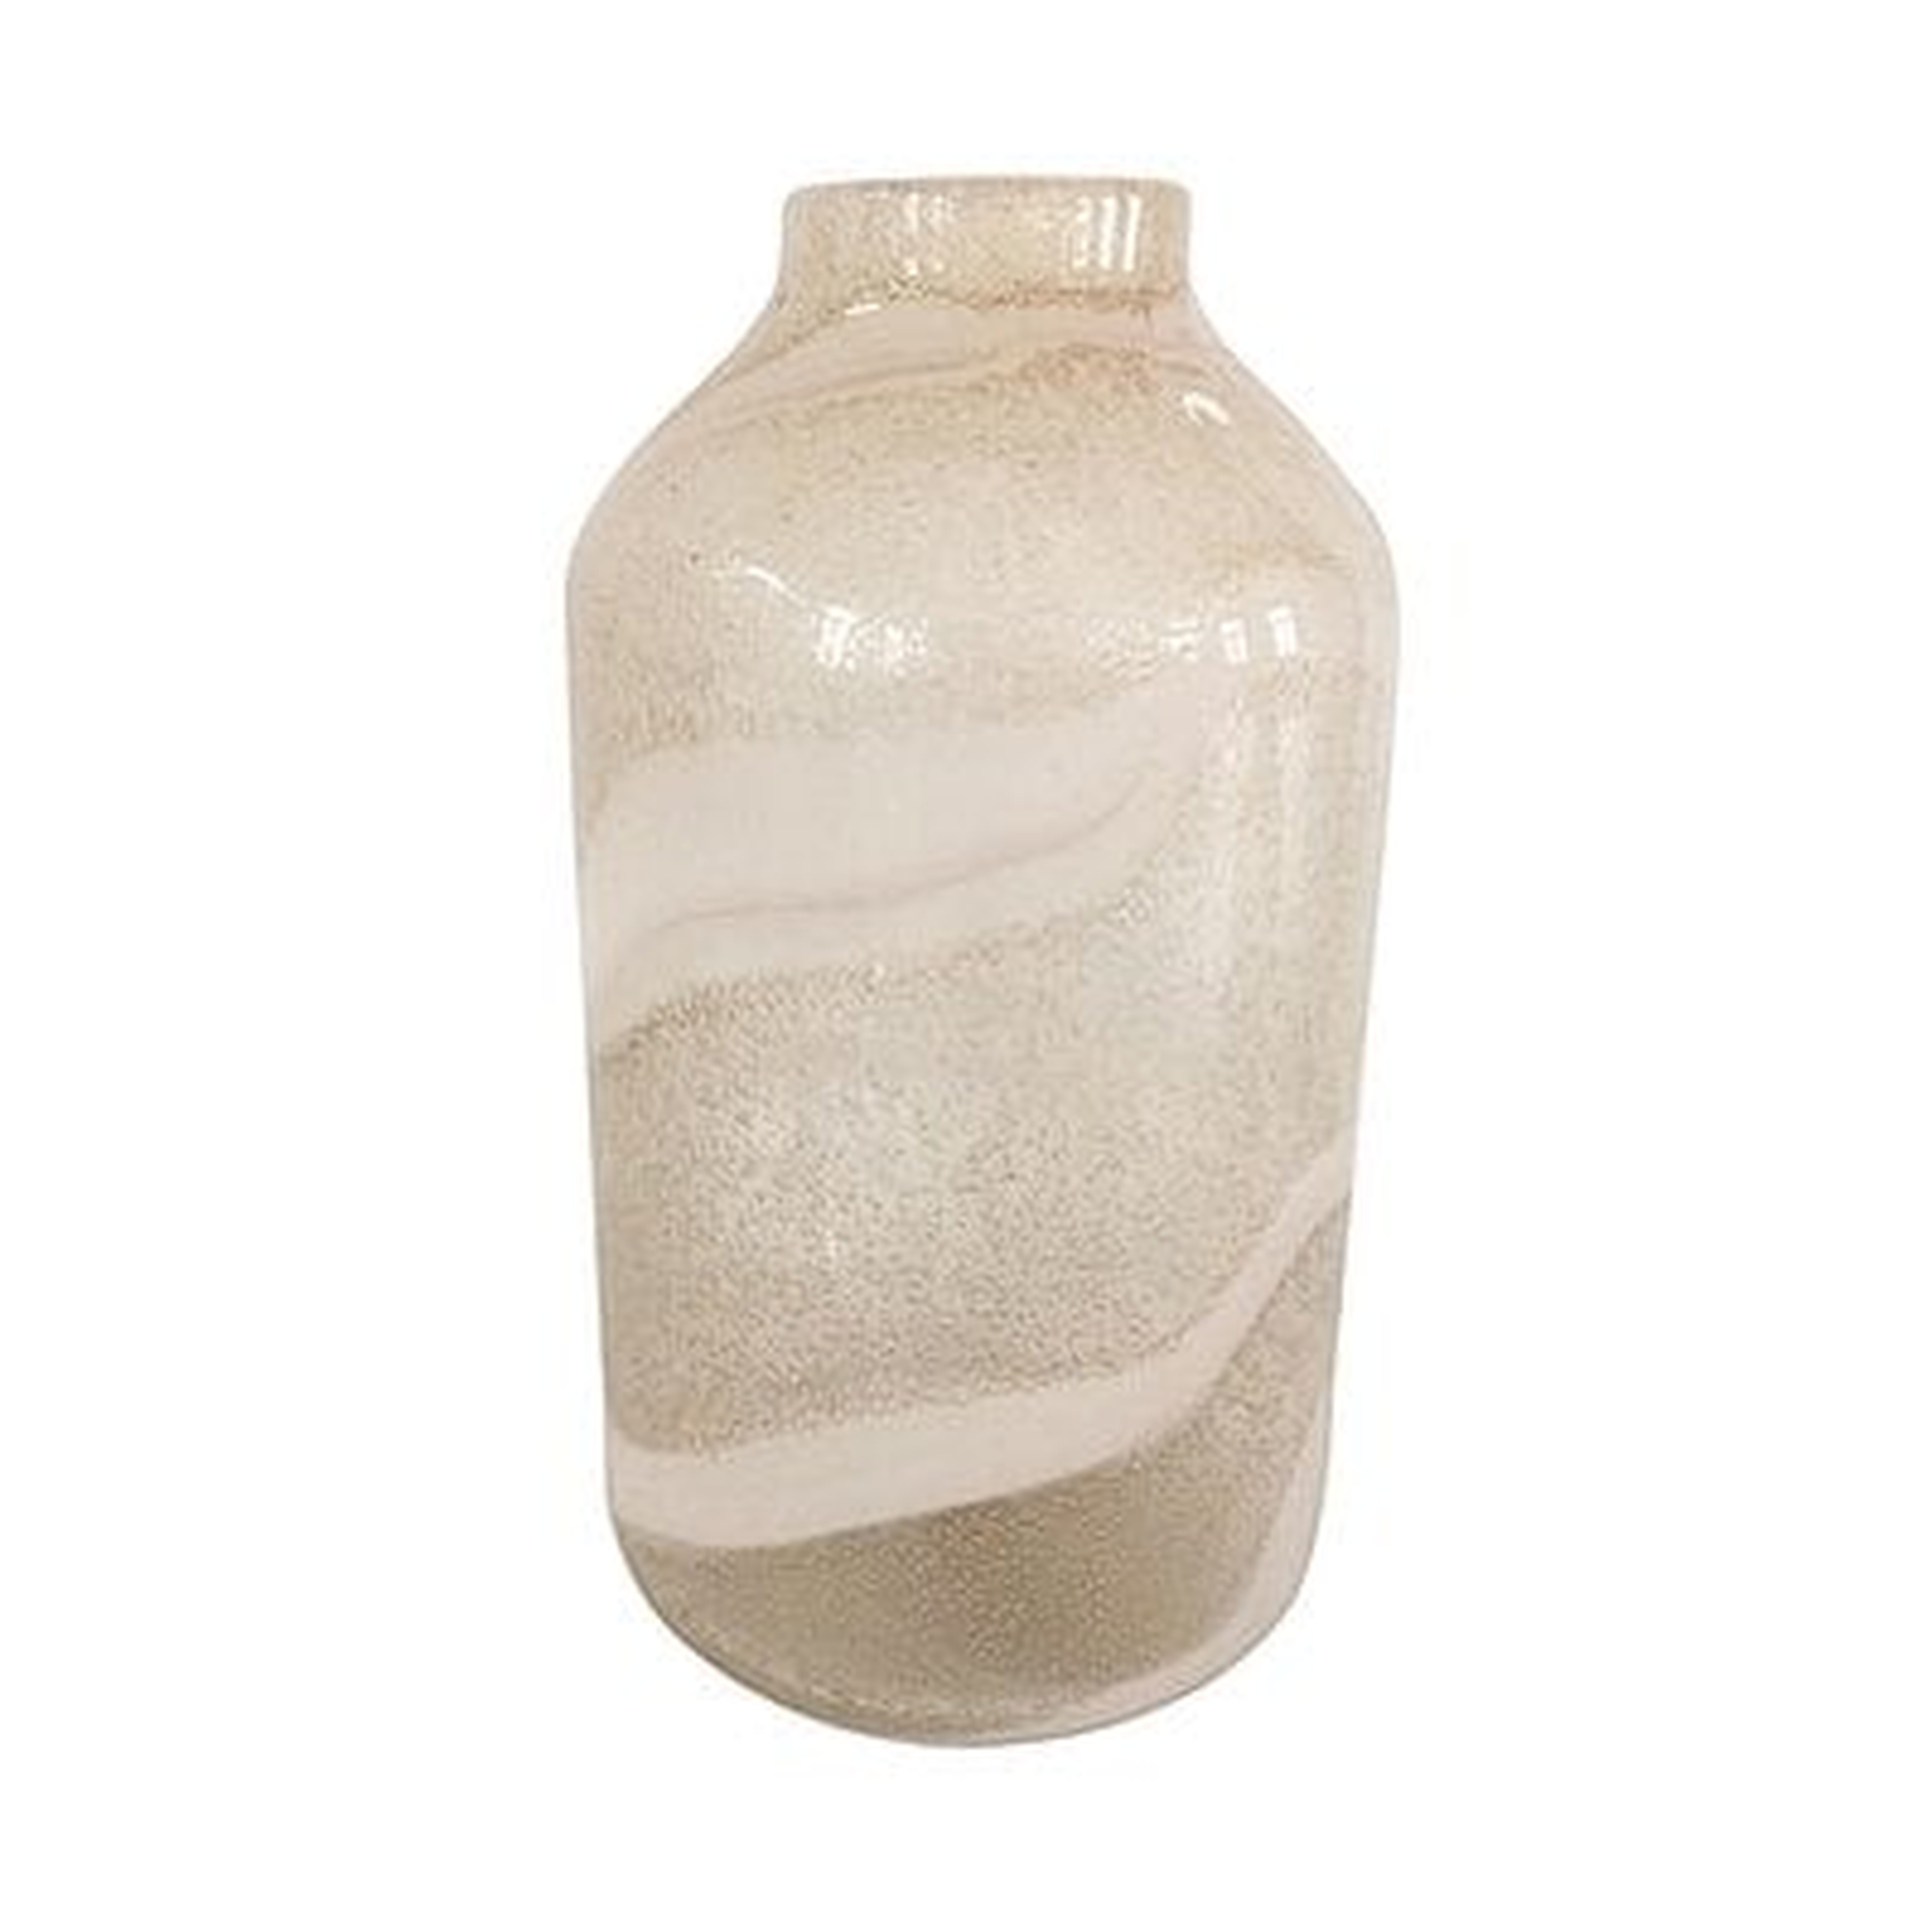 Europus Decorative Glass Table Vase - Wayfair